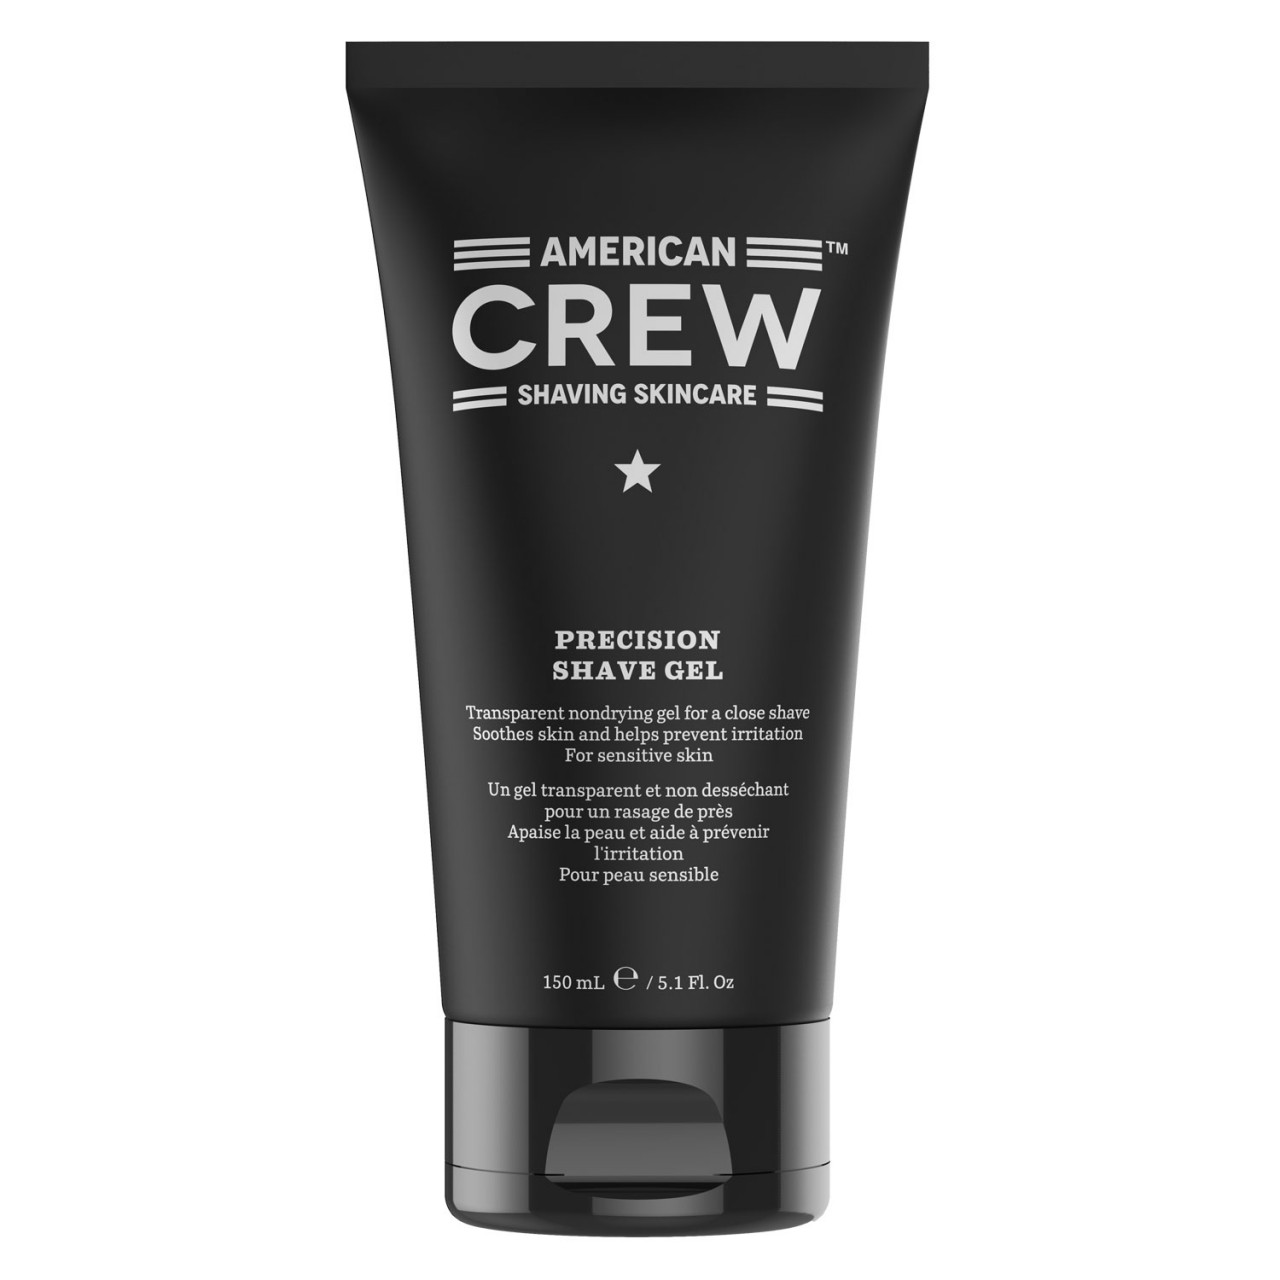 Shaving Skincare - Precision Shave Gel von American Crew